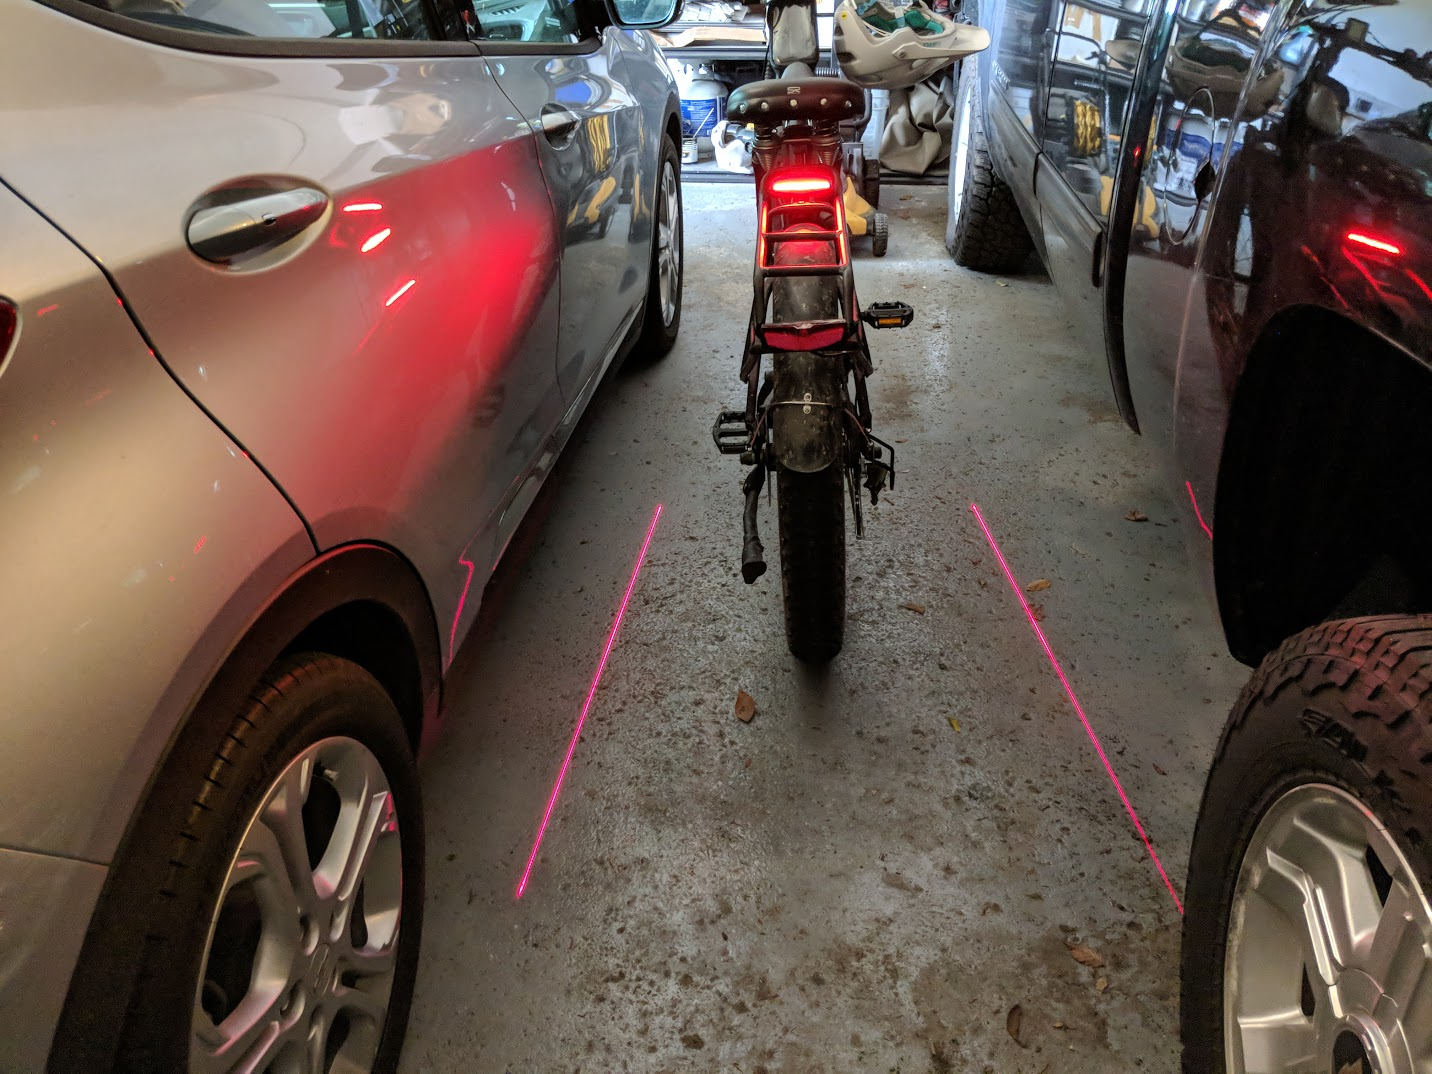 Laser bike lights!